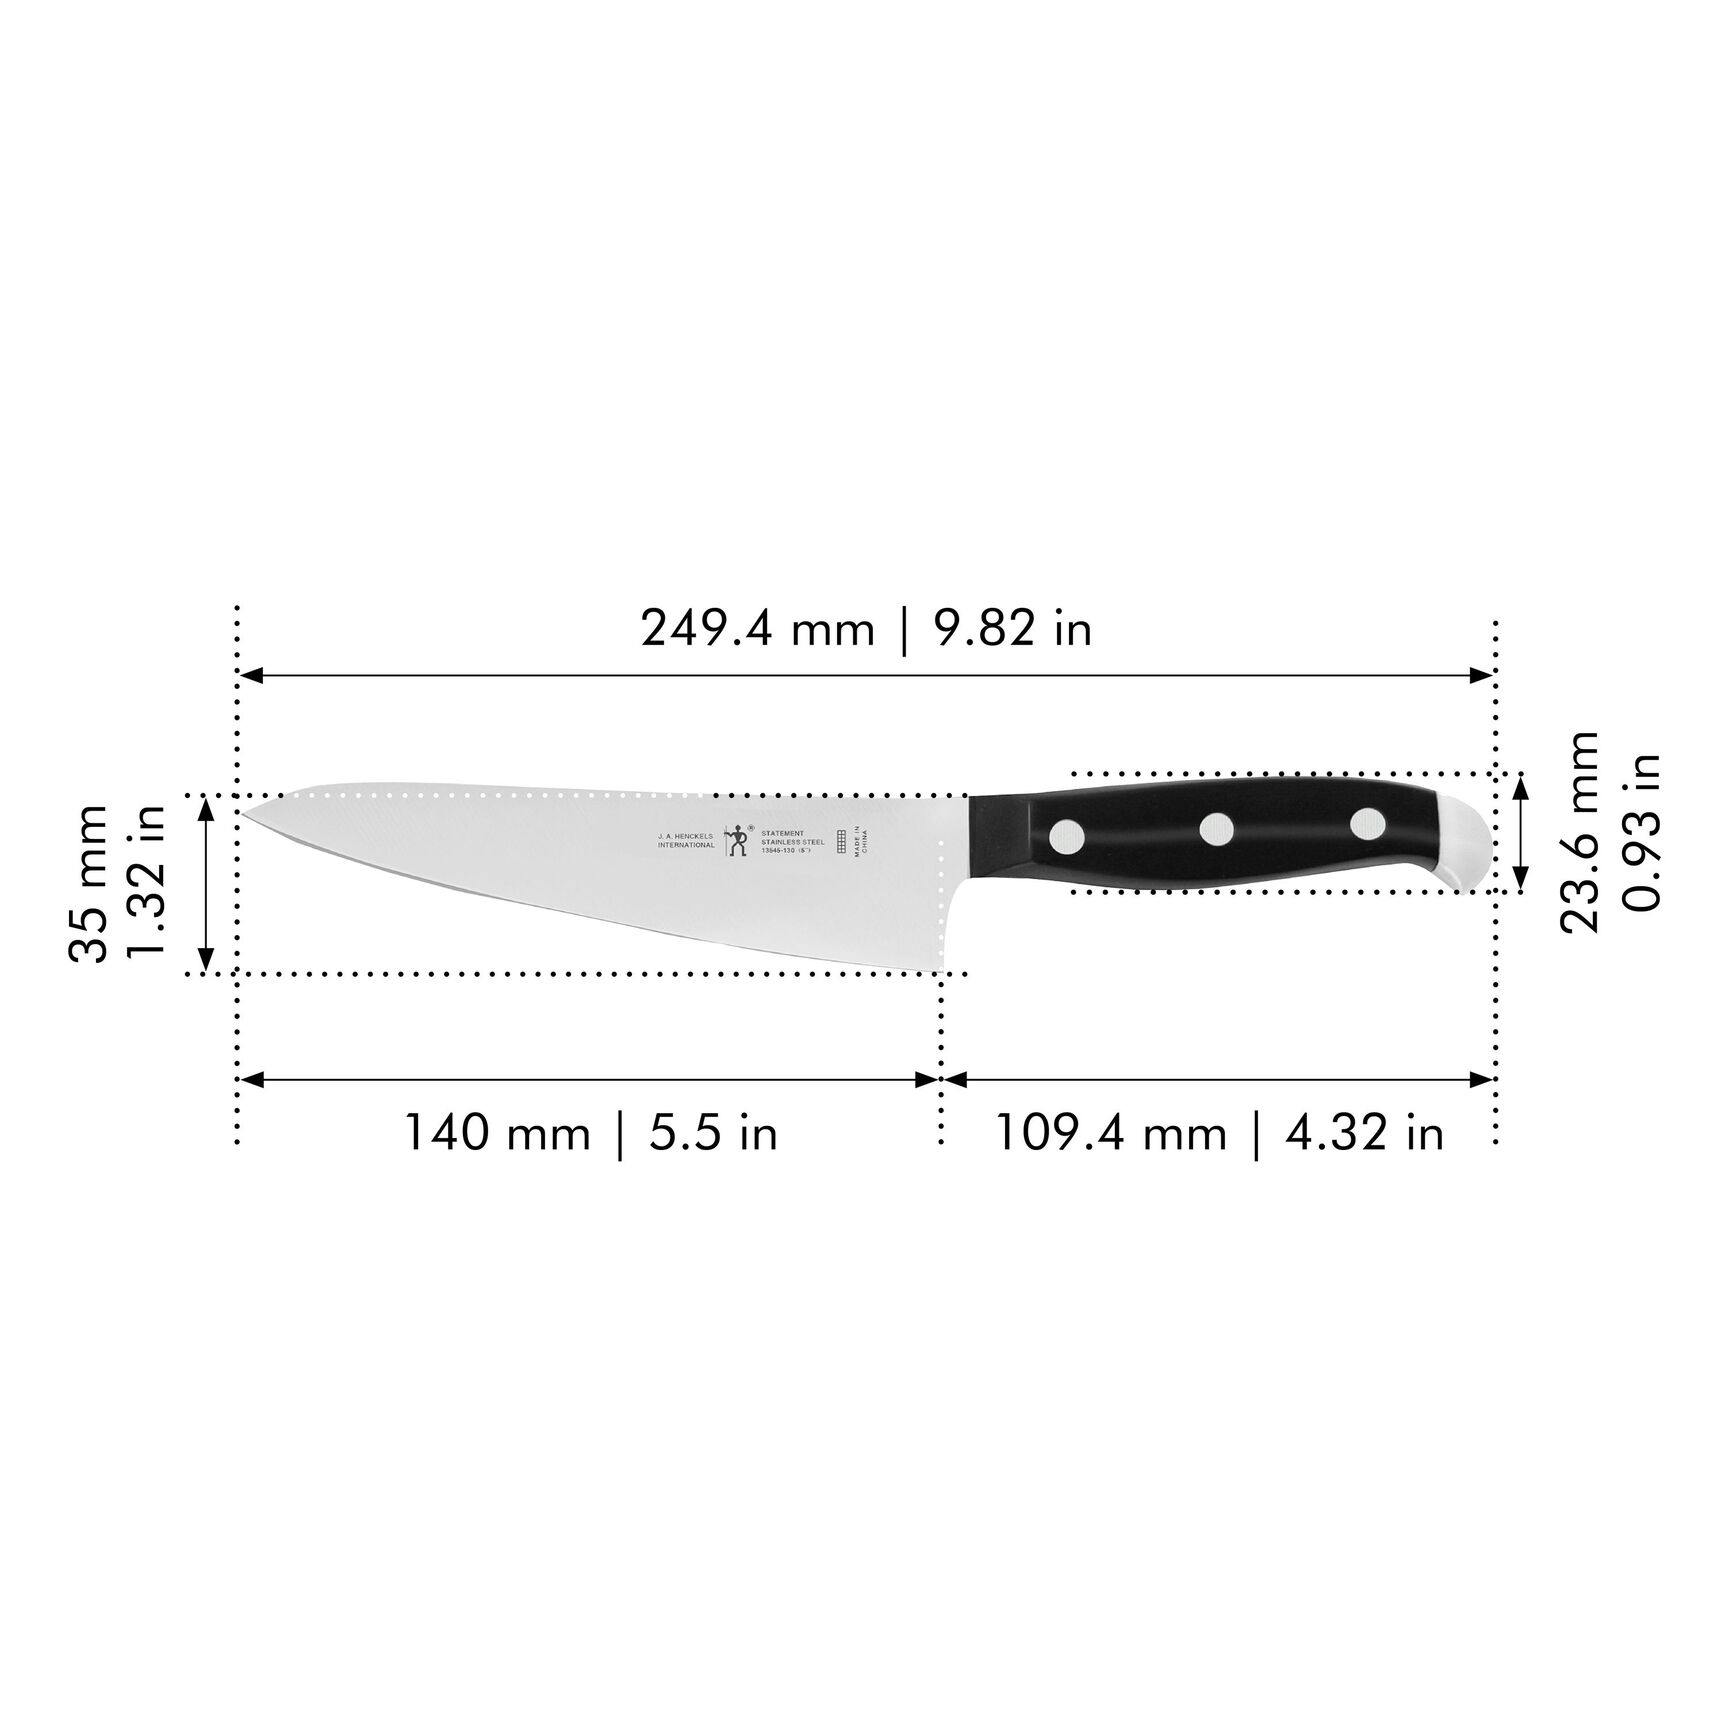 Henckels Statement 5.5-inch Fine Edge Prep Knife